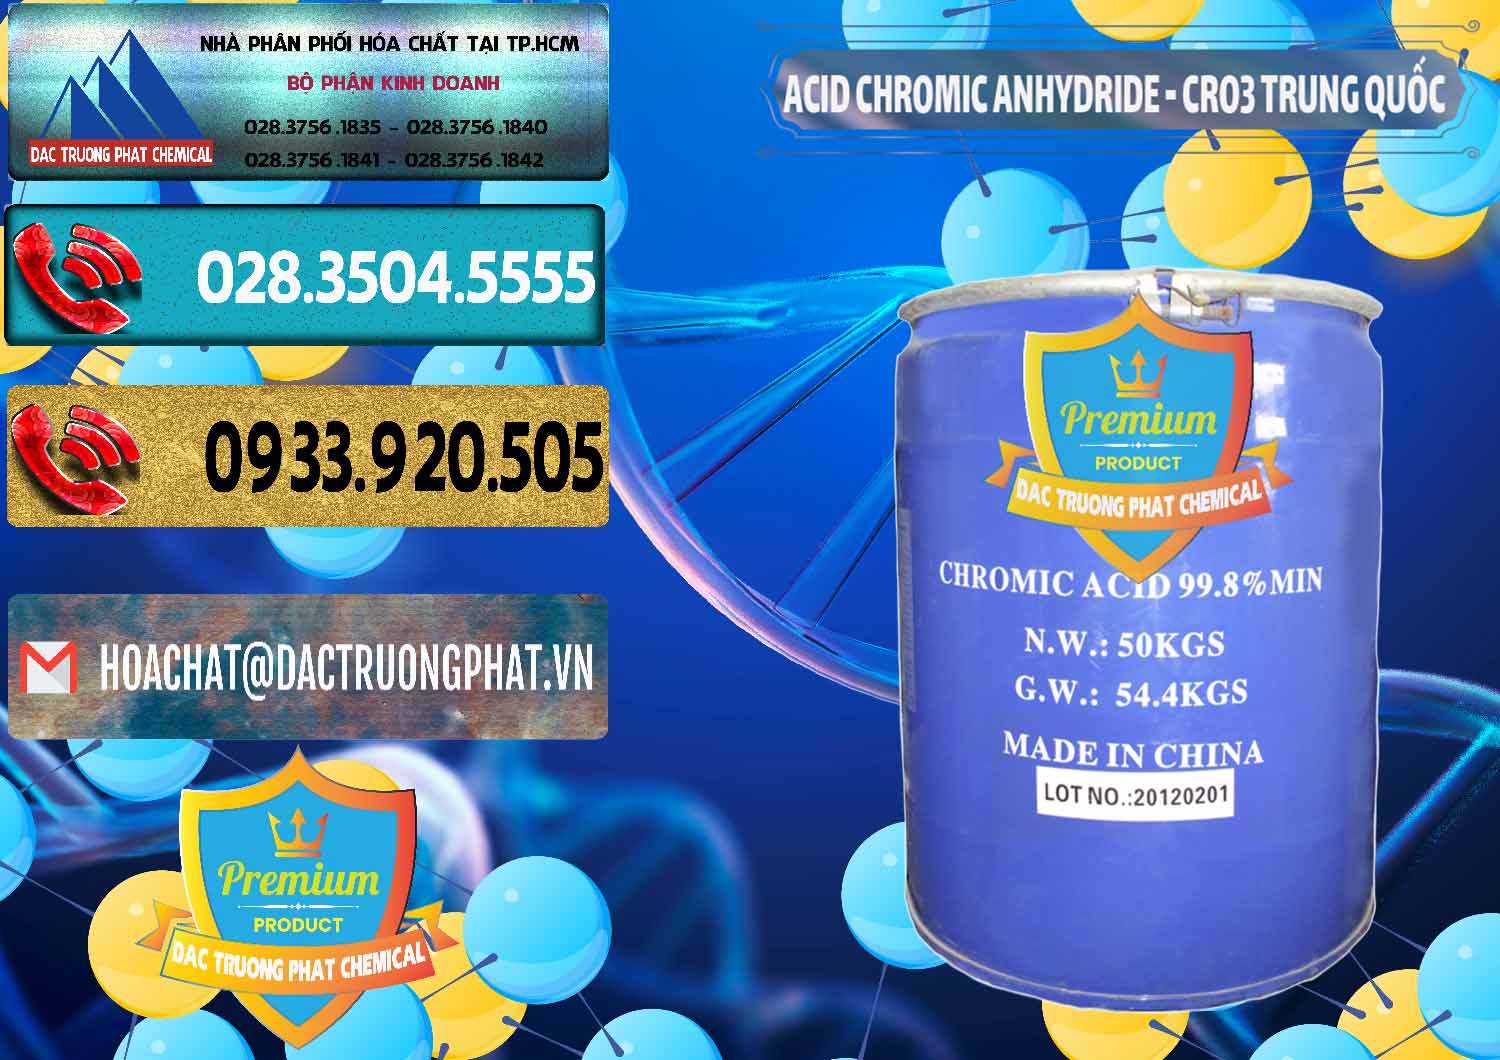 Công ty kinh doanh ( bán ) Acid Chromic Anhydride - Cromic CRO3 Trung Quốc China - 0007 - Công ty chuyên cung cấp _ bán hóa chất tại TP.HCM - hoachatdetnhuom.com